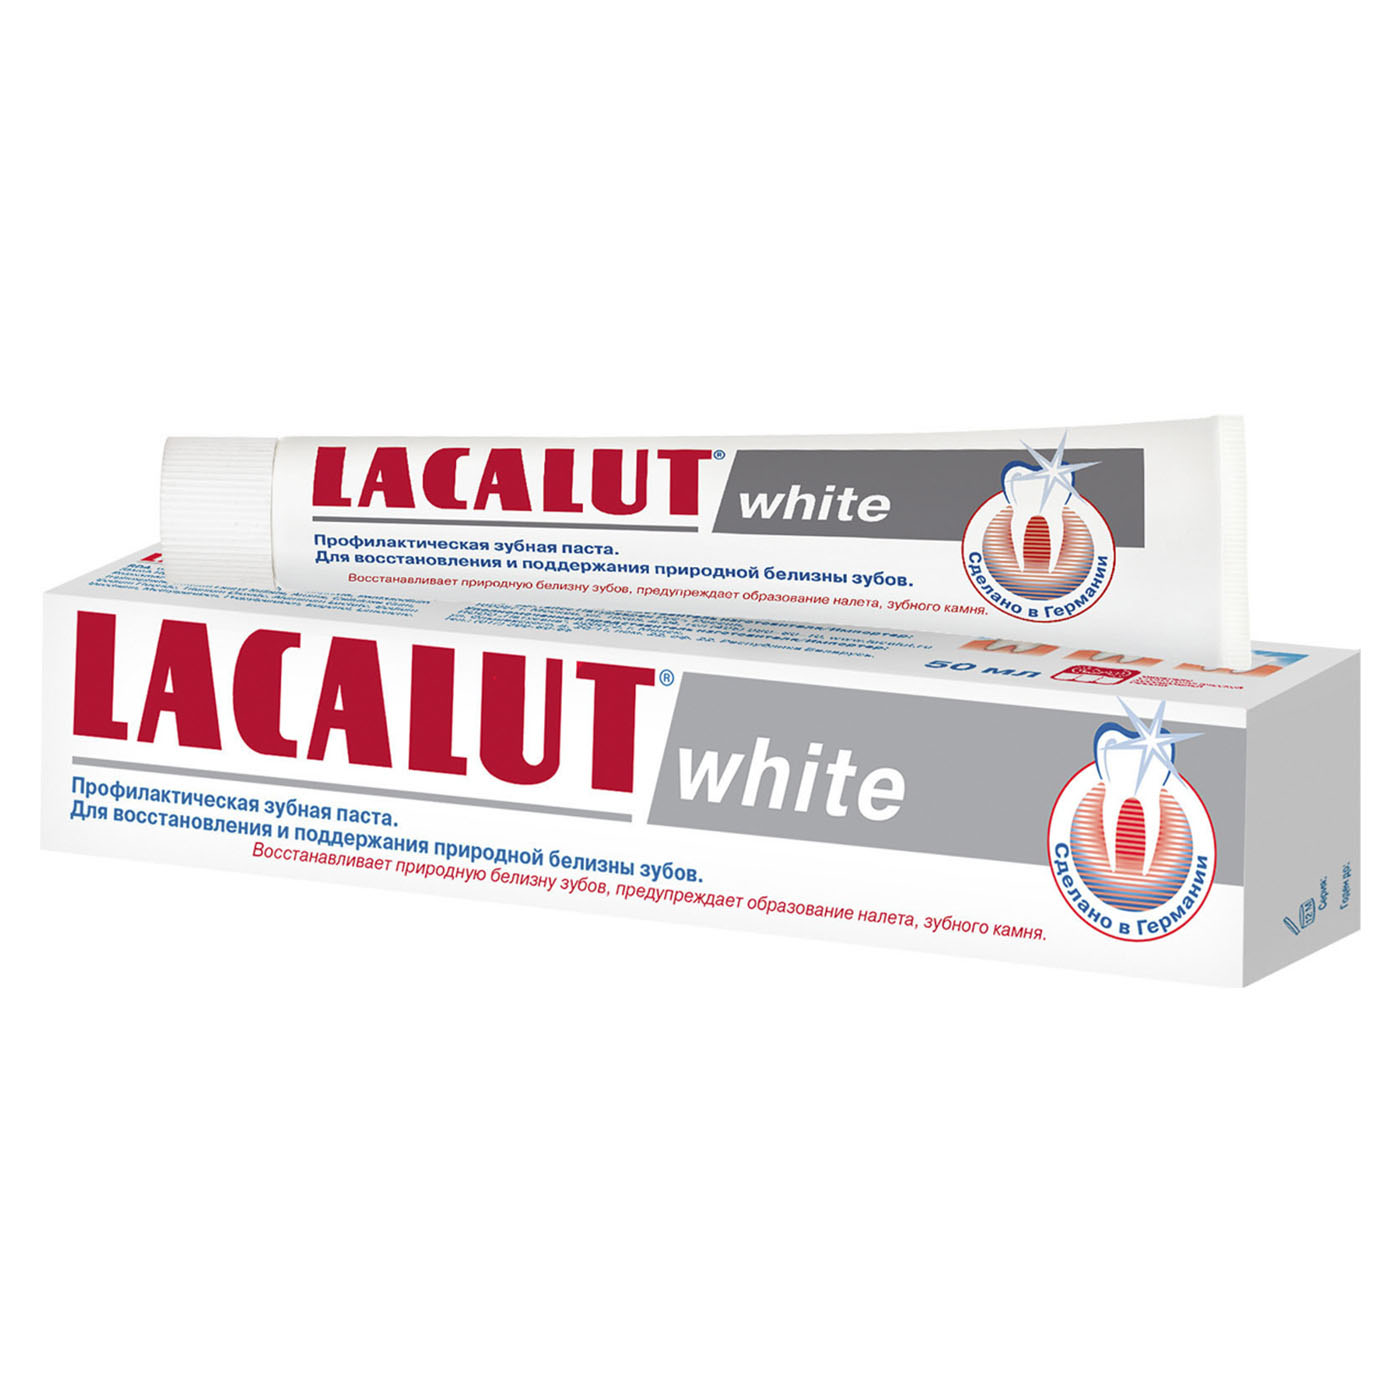 Купить Lacalut Зубная паста Уайт 50 мл (Lacalut, Зубные пасты), Германия